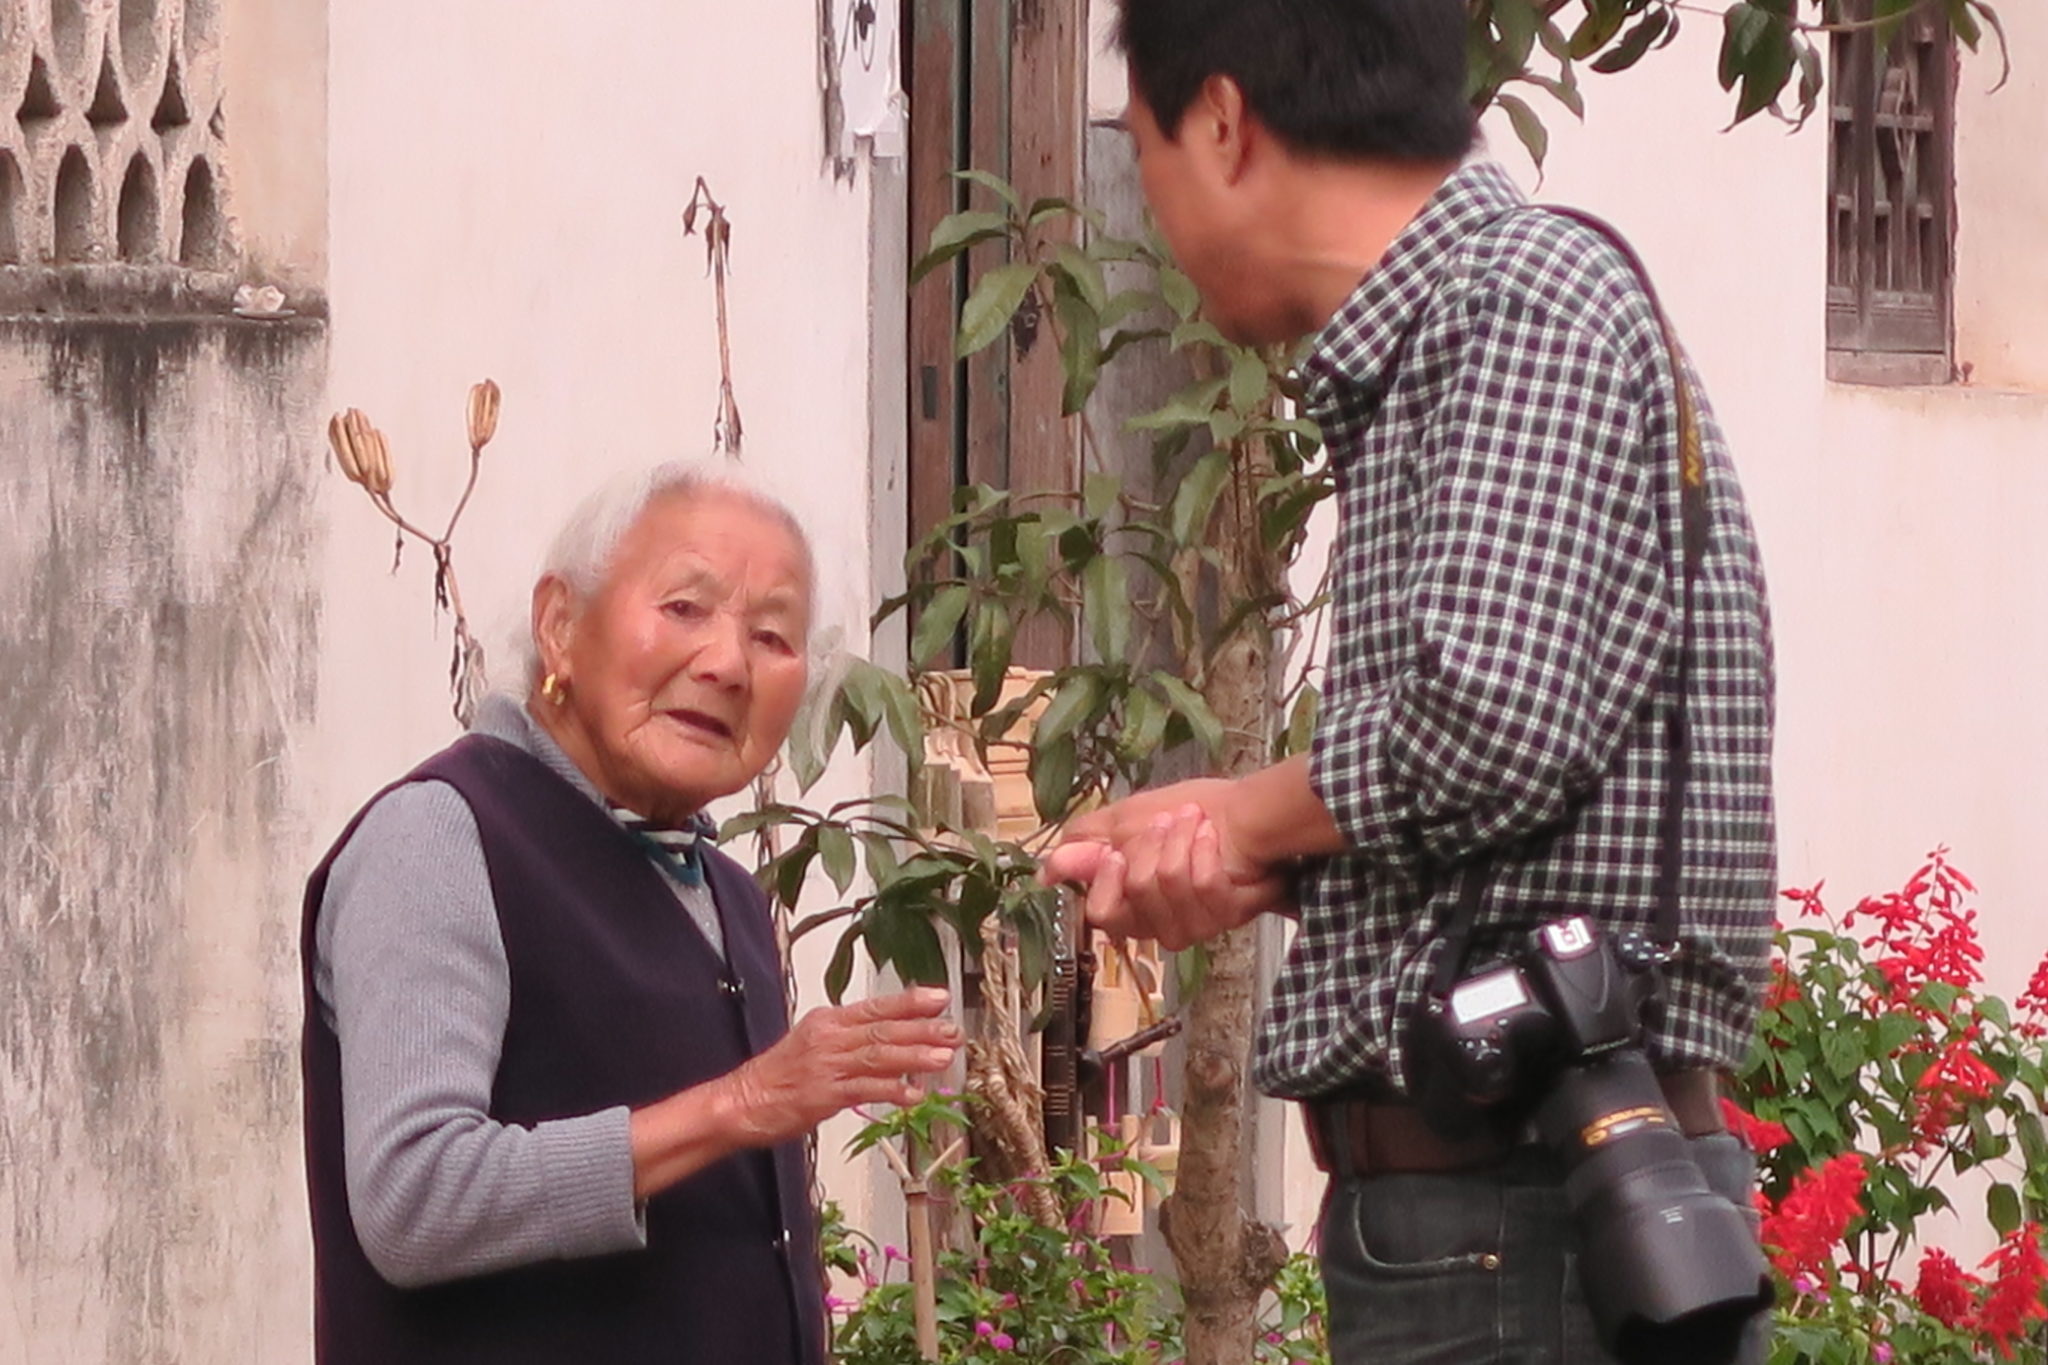 Una donna anziana sta litigando furiosamente con un fotografo che l’ha fotografata